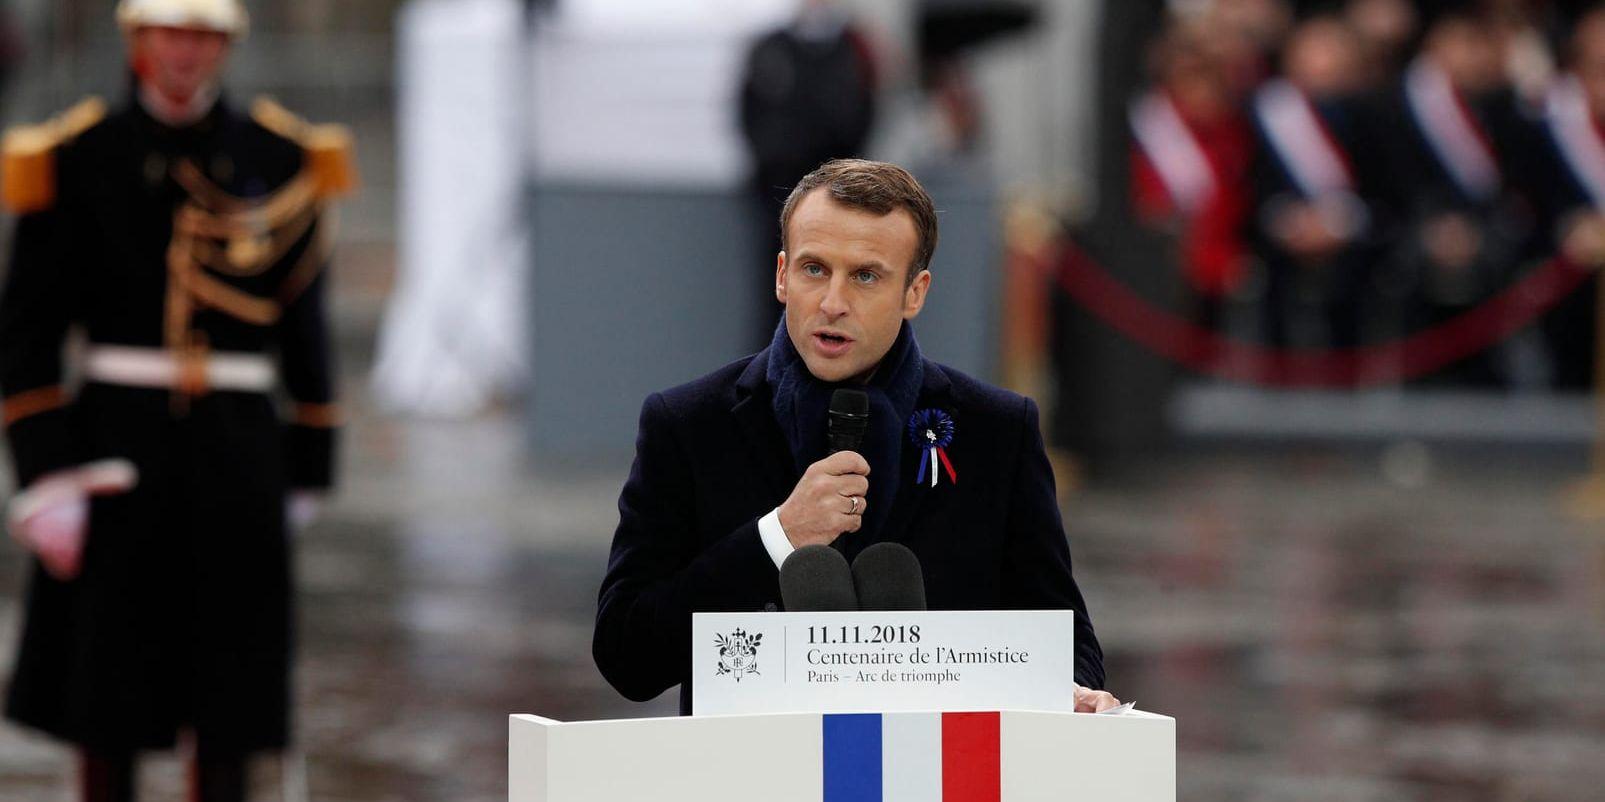 Europa tog nästan livet av sig, säger Frankrikes president Emmanuel Macron i sitt tal vid 100-årsdagen av första världskrigets slut.